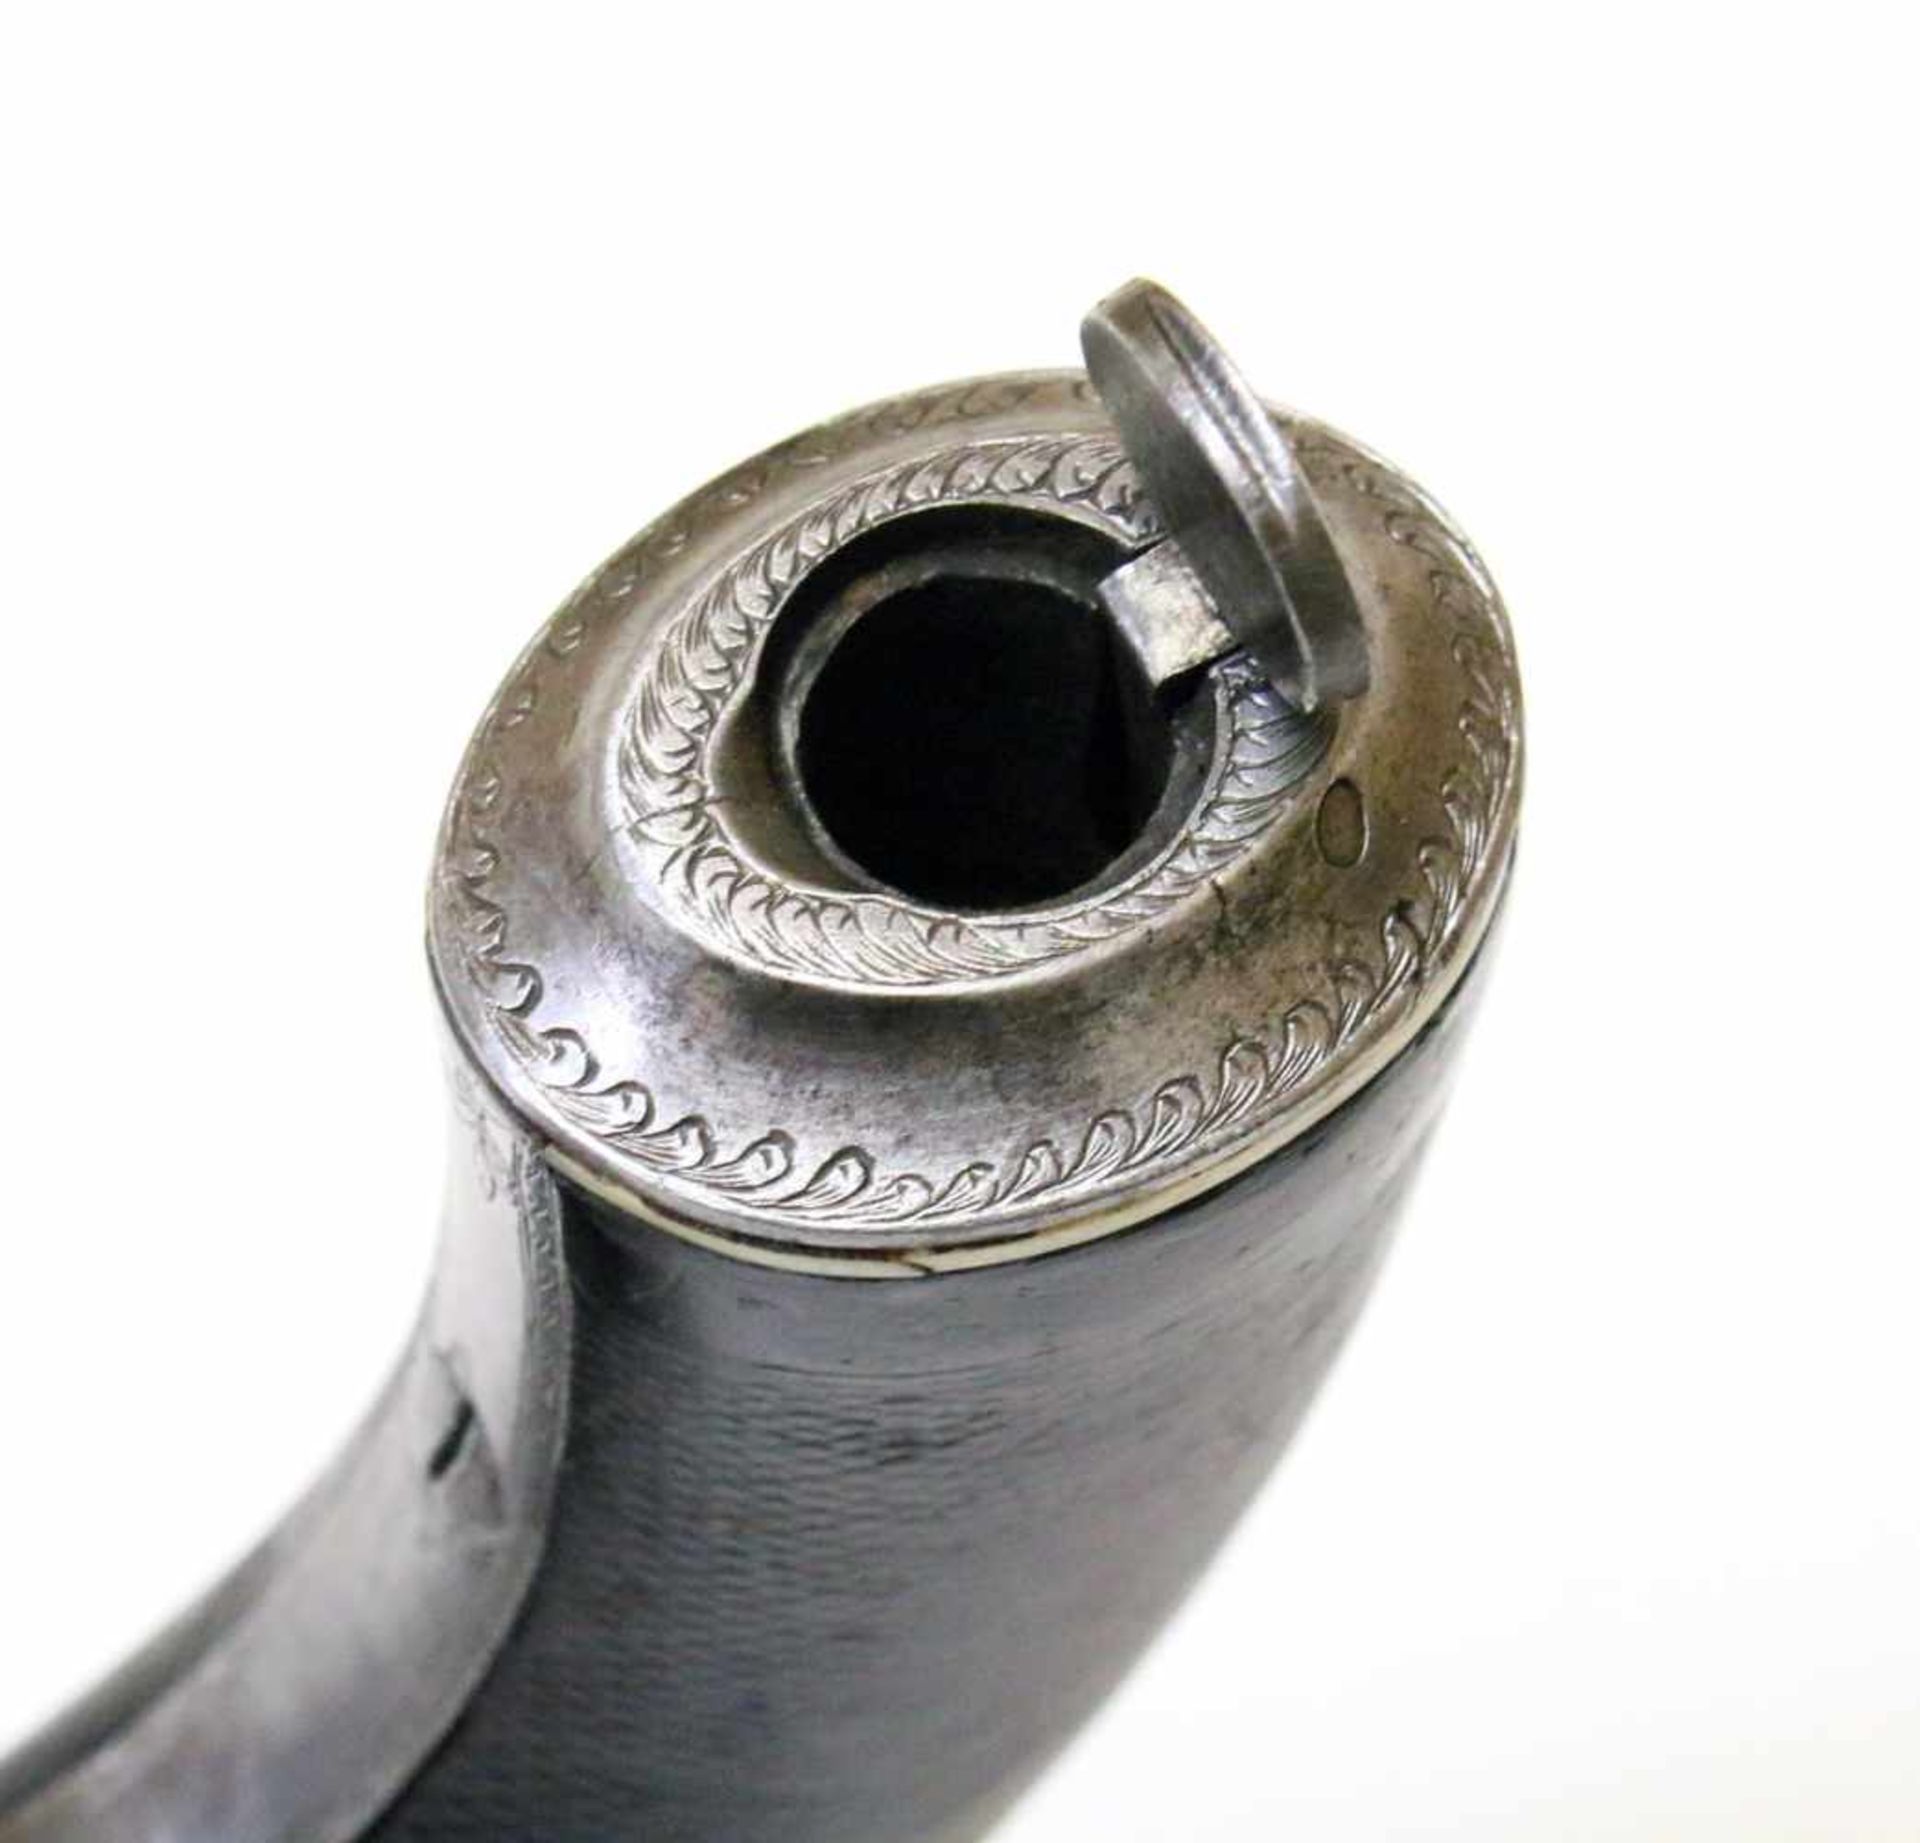 Doppelläufige Perkussionspistole - England um 1850 Cal. 14mm Perk., Zustand 2. Zwei übereinander - Bild 11 aus 15